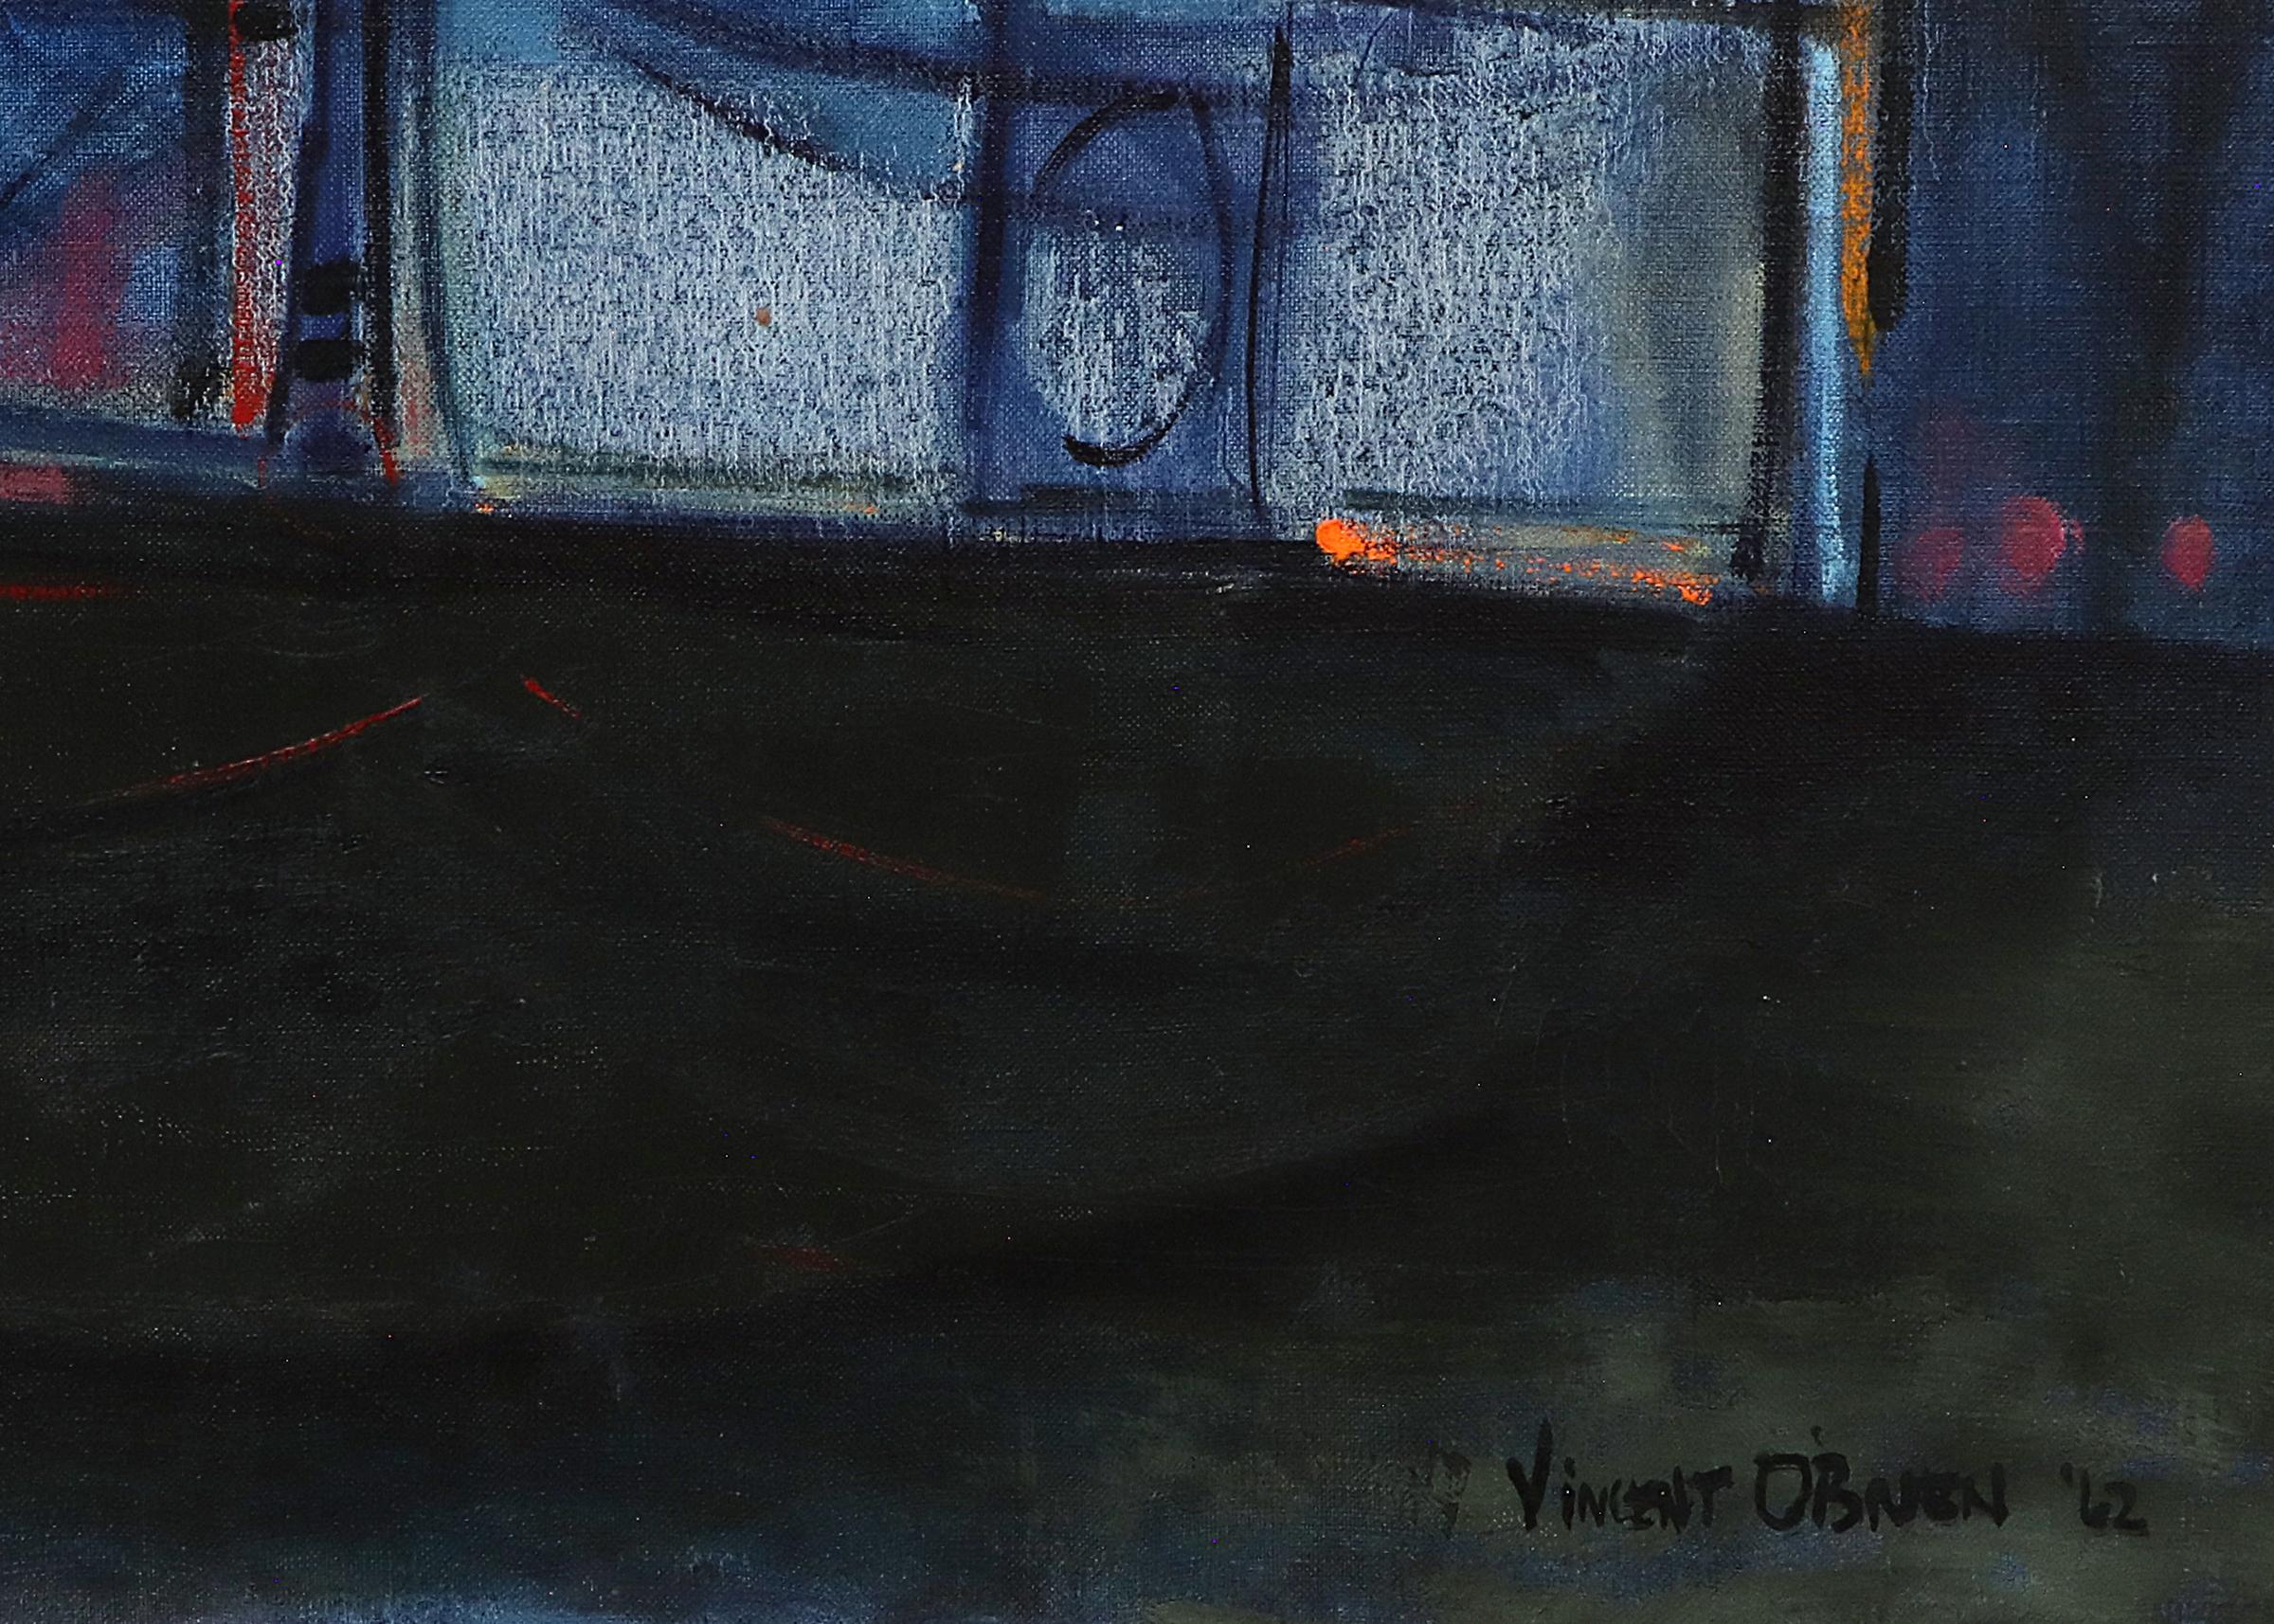 Abstraktes Ölgemälde auf Leinwand von Vincent Pershing O'Brien (1919-1999) aus dem Jahr 1962. Präsentiert in einem benutzerdefinierten Rahmen messen 46 x 71 x 1 Zoll. Die Leinwand ist 43 1⁄4 x 68 Zoll groß. 

Die Malerei ist in gutem Zustand - bitte